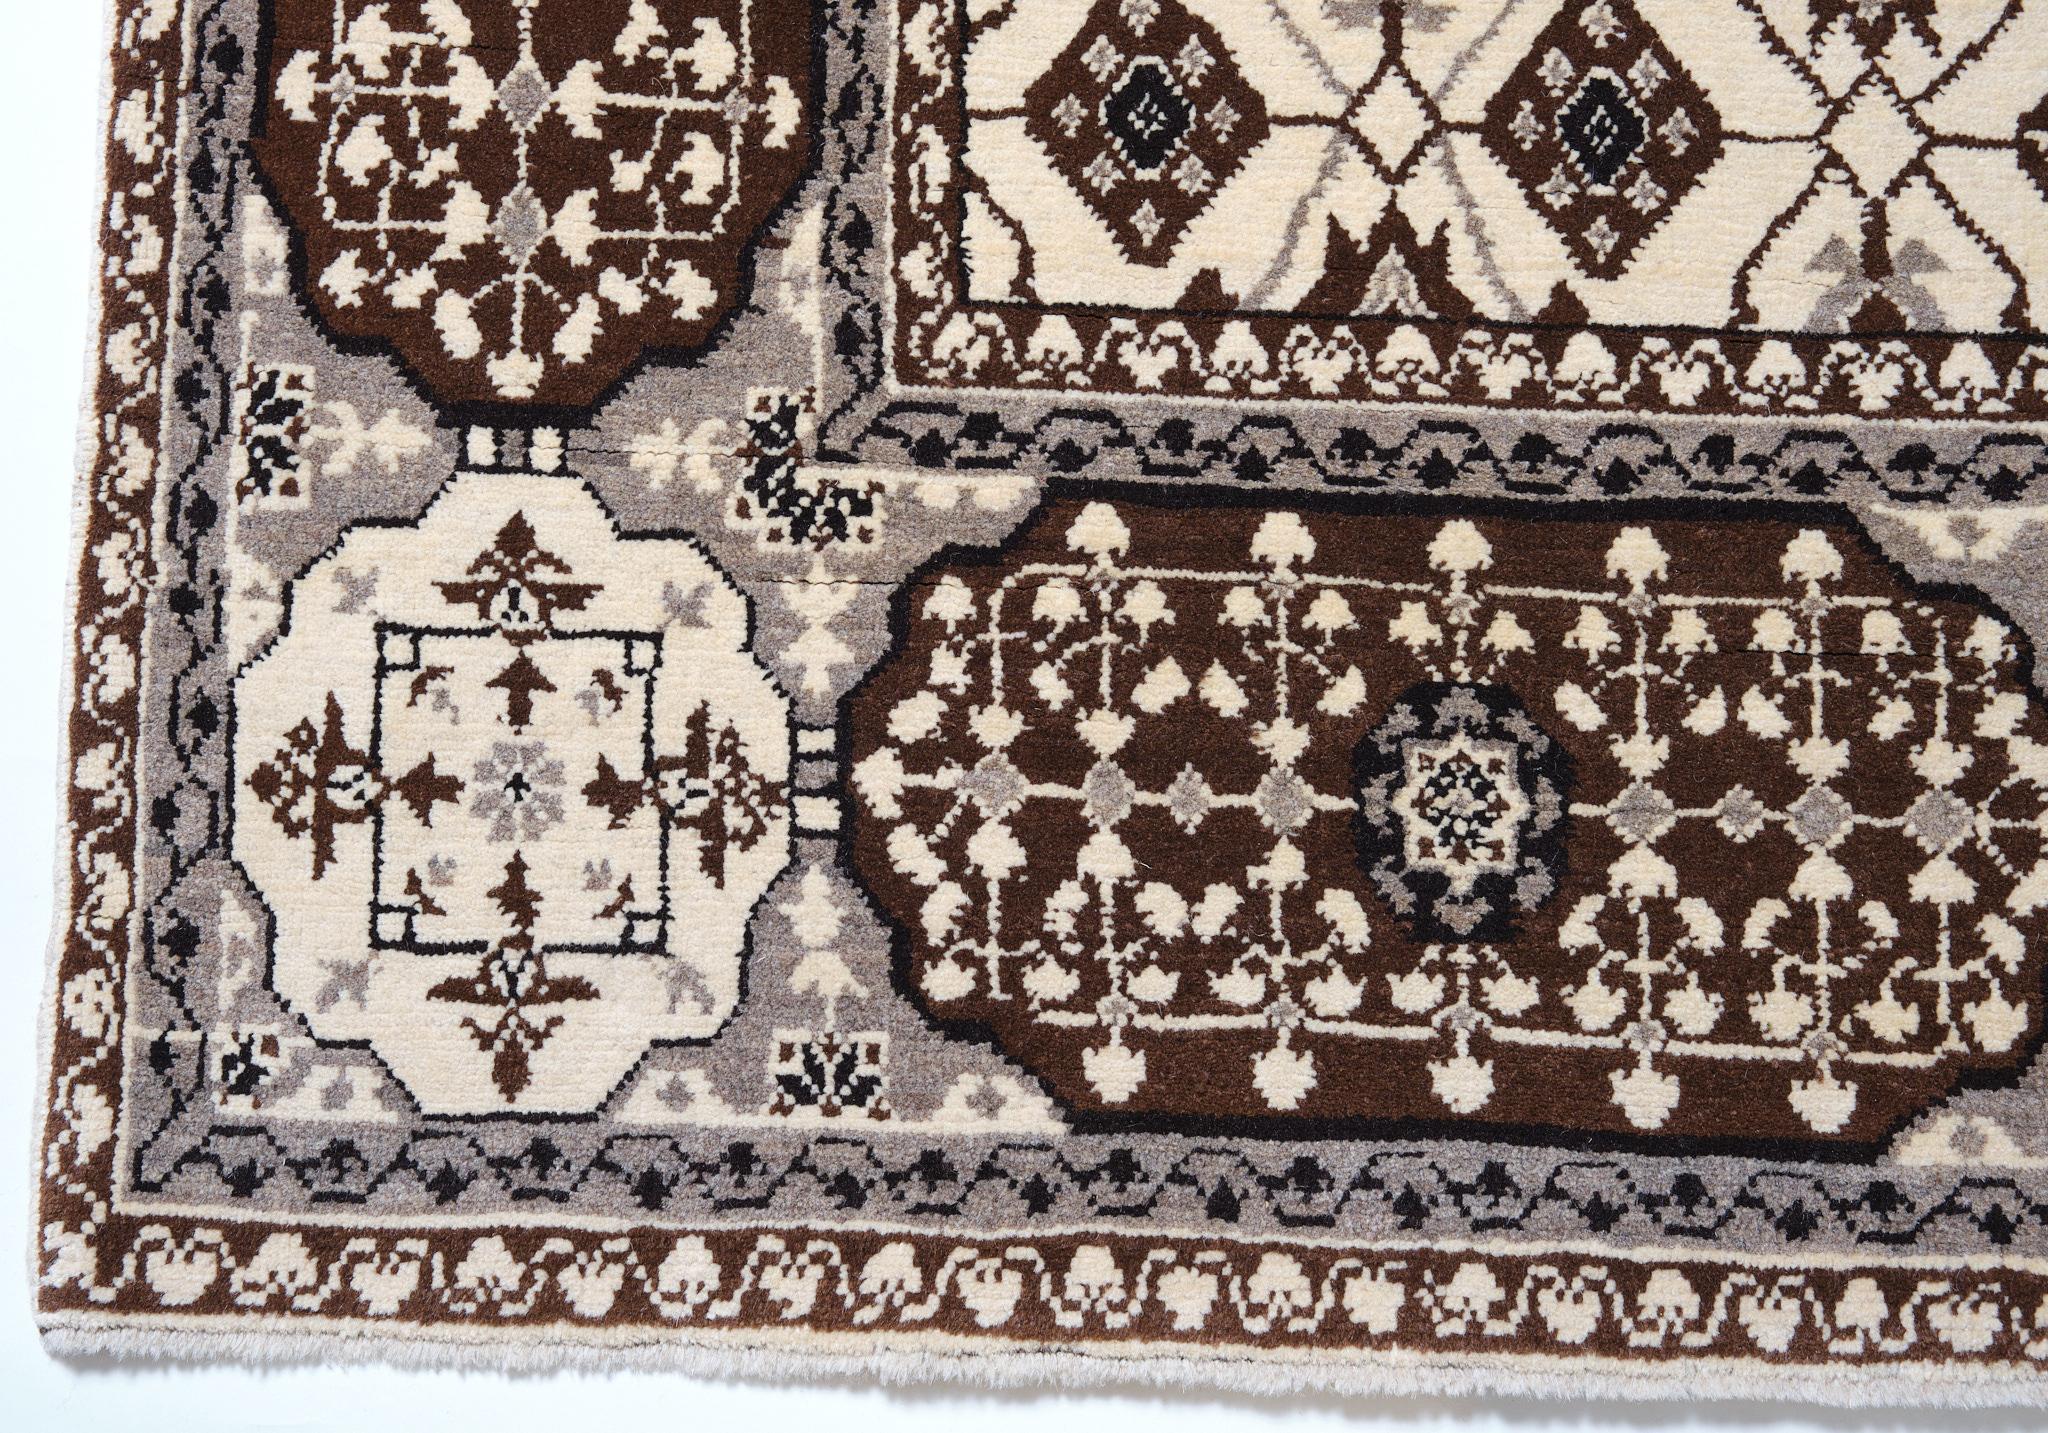 Die Quelle des Teppichs stammt aus der Collection'S Mercer Sotheby's 2000 (Katalogumschlag). Dieser Mamluken-Kairen-Teppich ist bekannt dafür, dass er im frühen 16. Jahrhundert vom Mamluken-Sultan von Kairo, Ägypten, entworfen wurde und eine Art